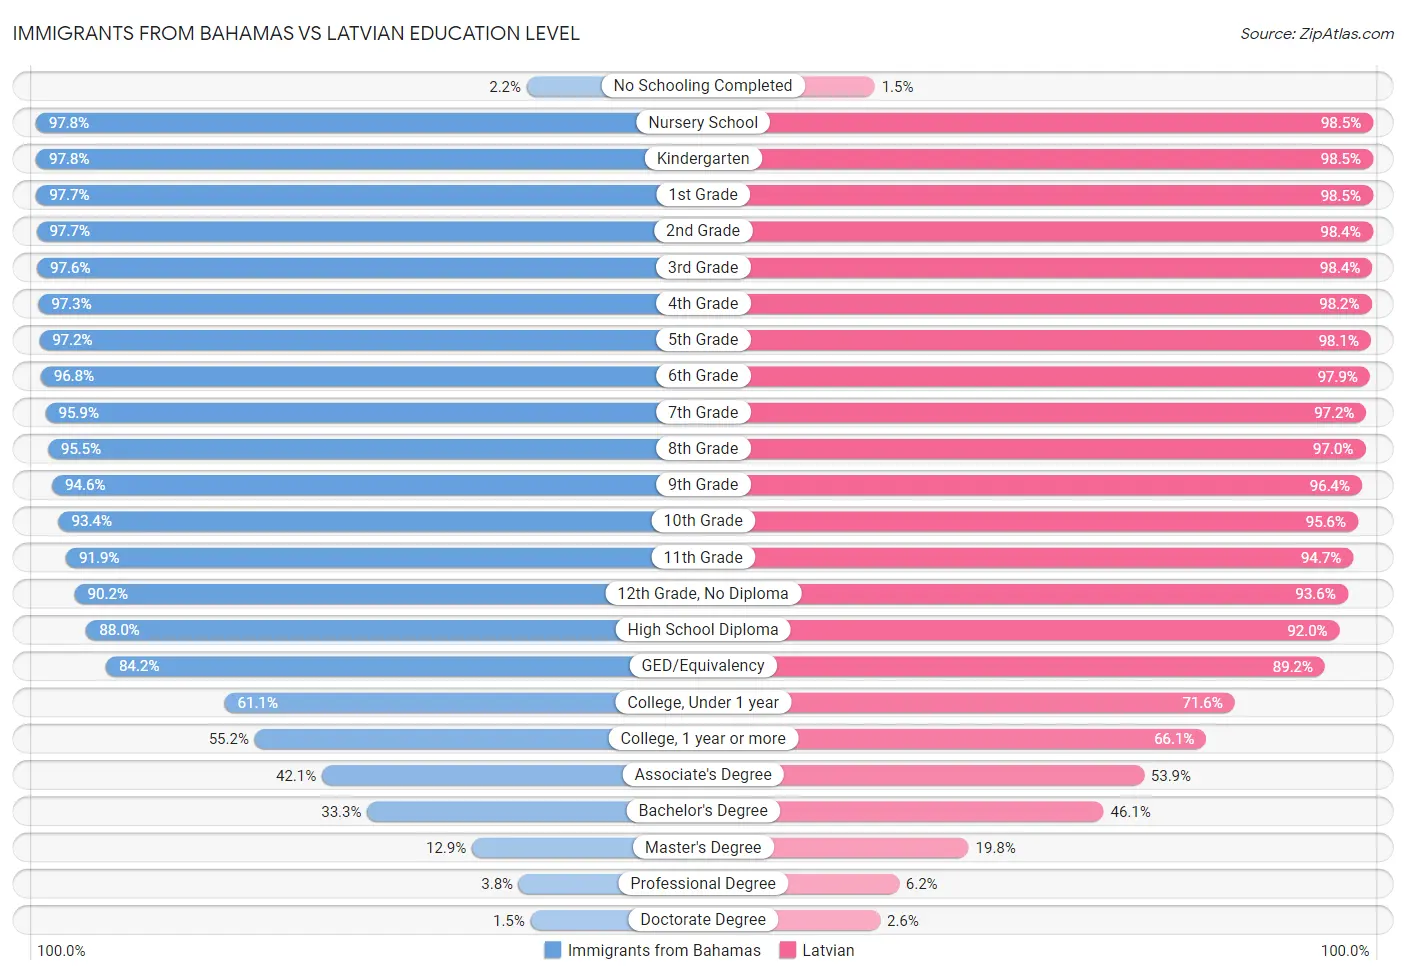 Immigrants from Bahamas vs Latvian Education Level